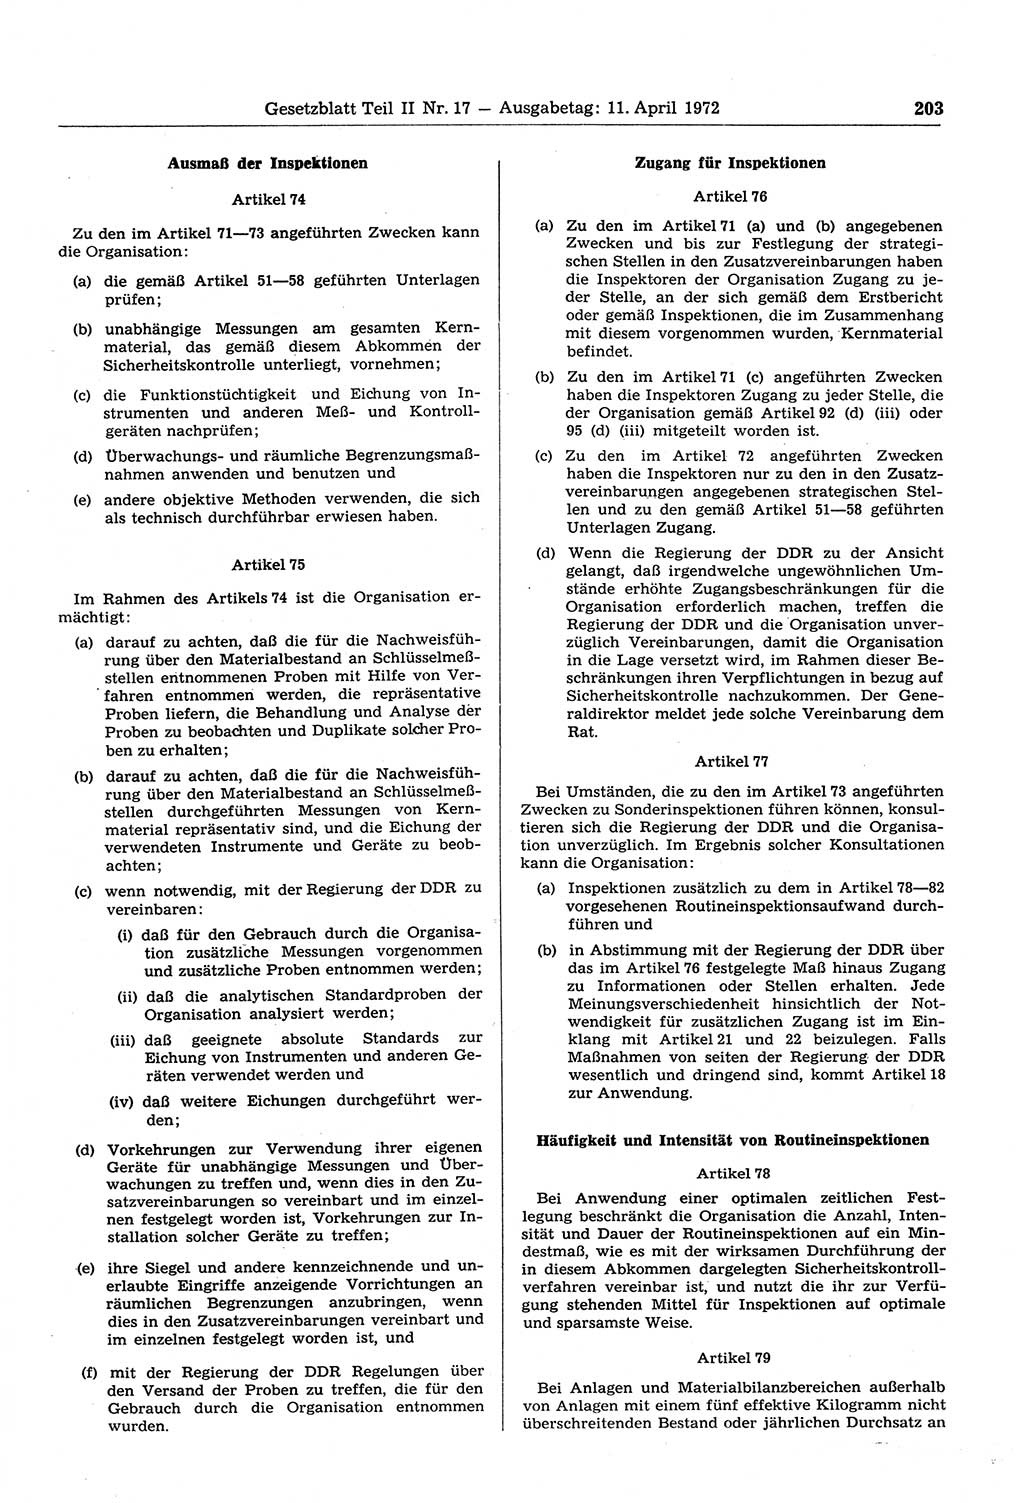 Gesetzblatt (GBl.) der Deutschen Demokratischen Republik (DDR) Teil ⅠⅠ 1972, Seite 203 (GBl. DDR ⅠⅠ 1972, S. 203)